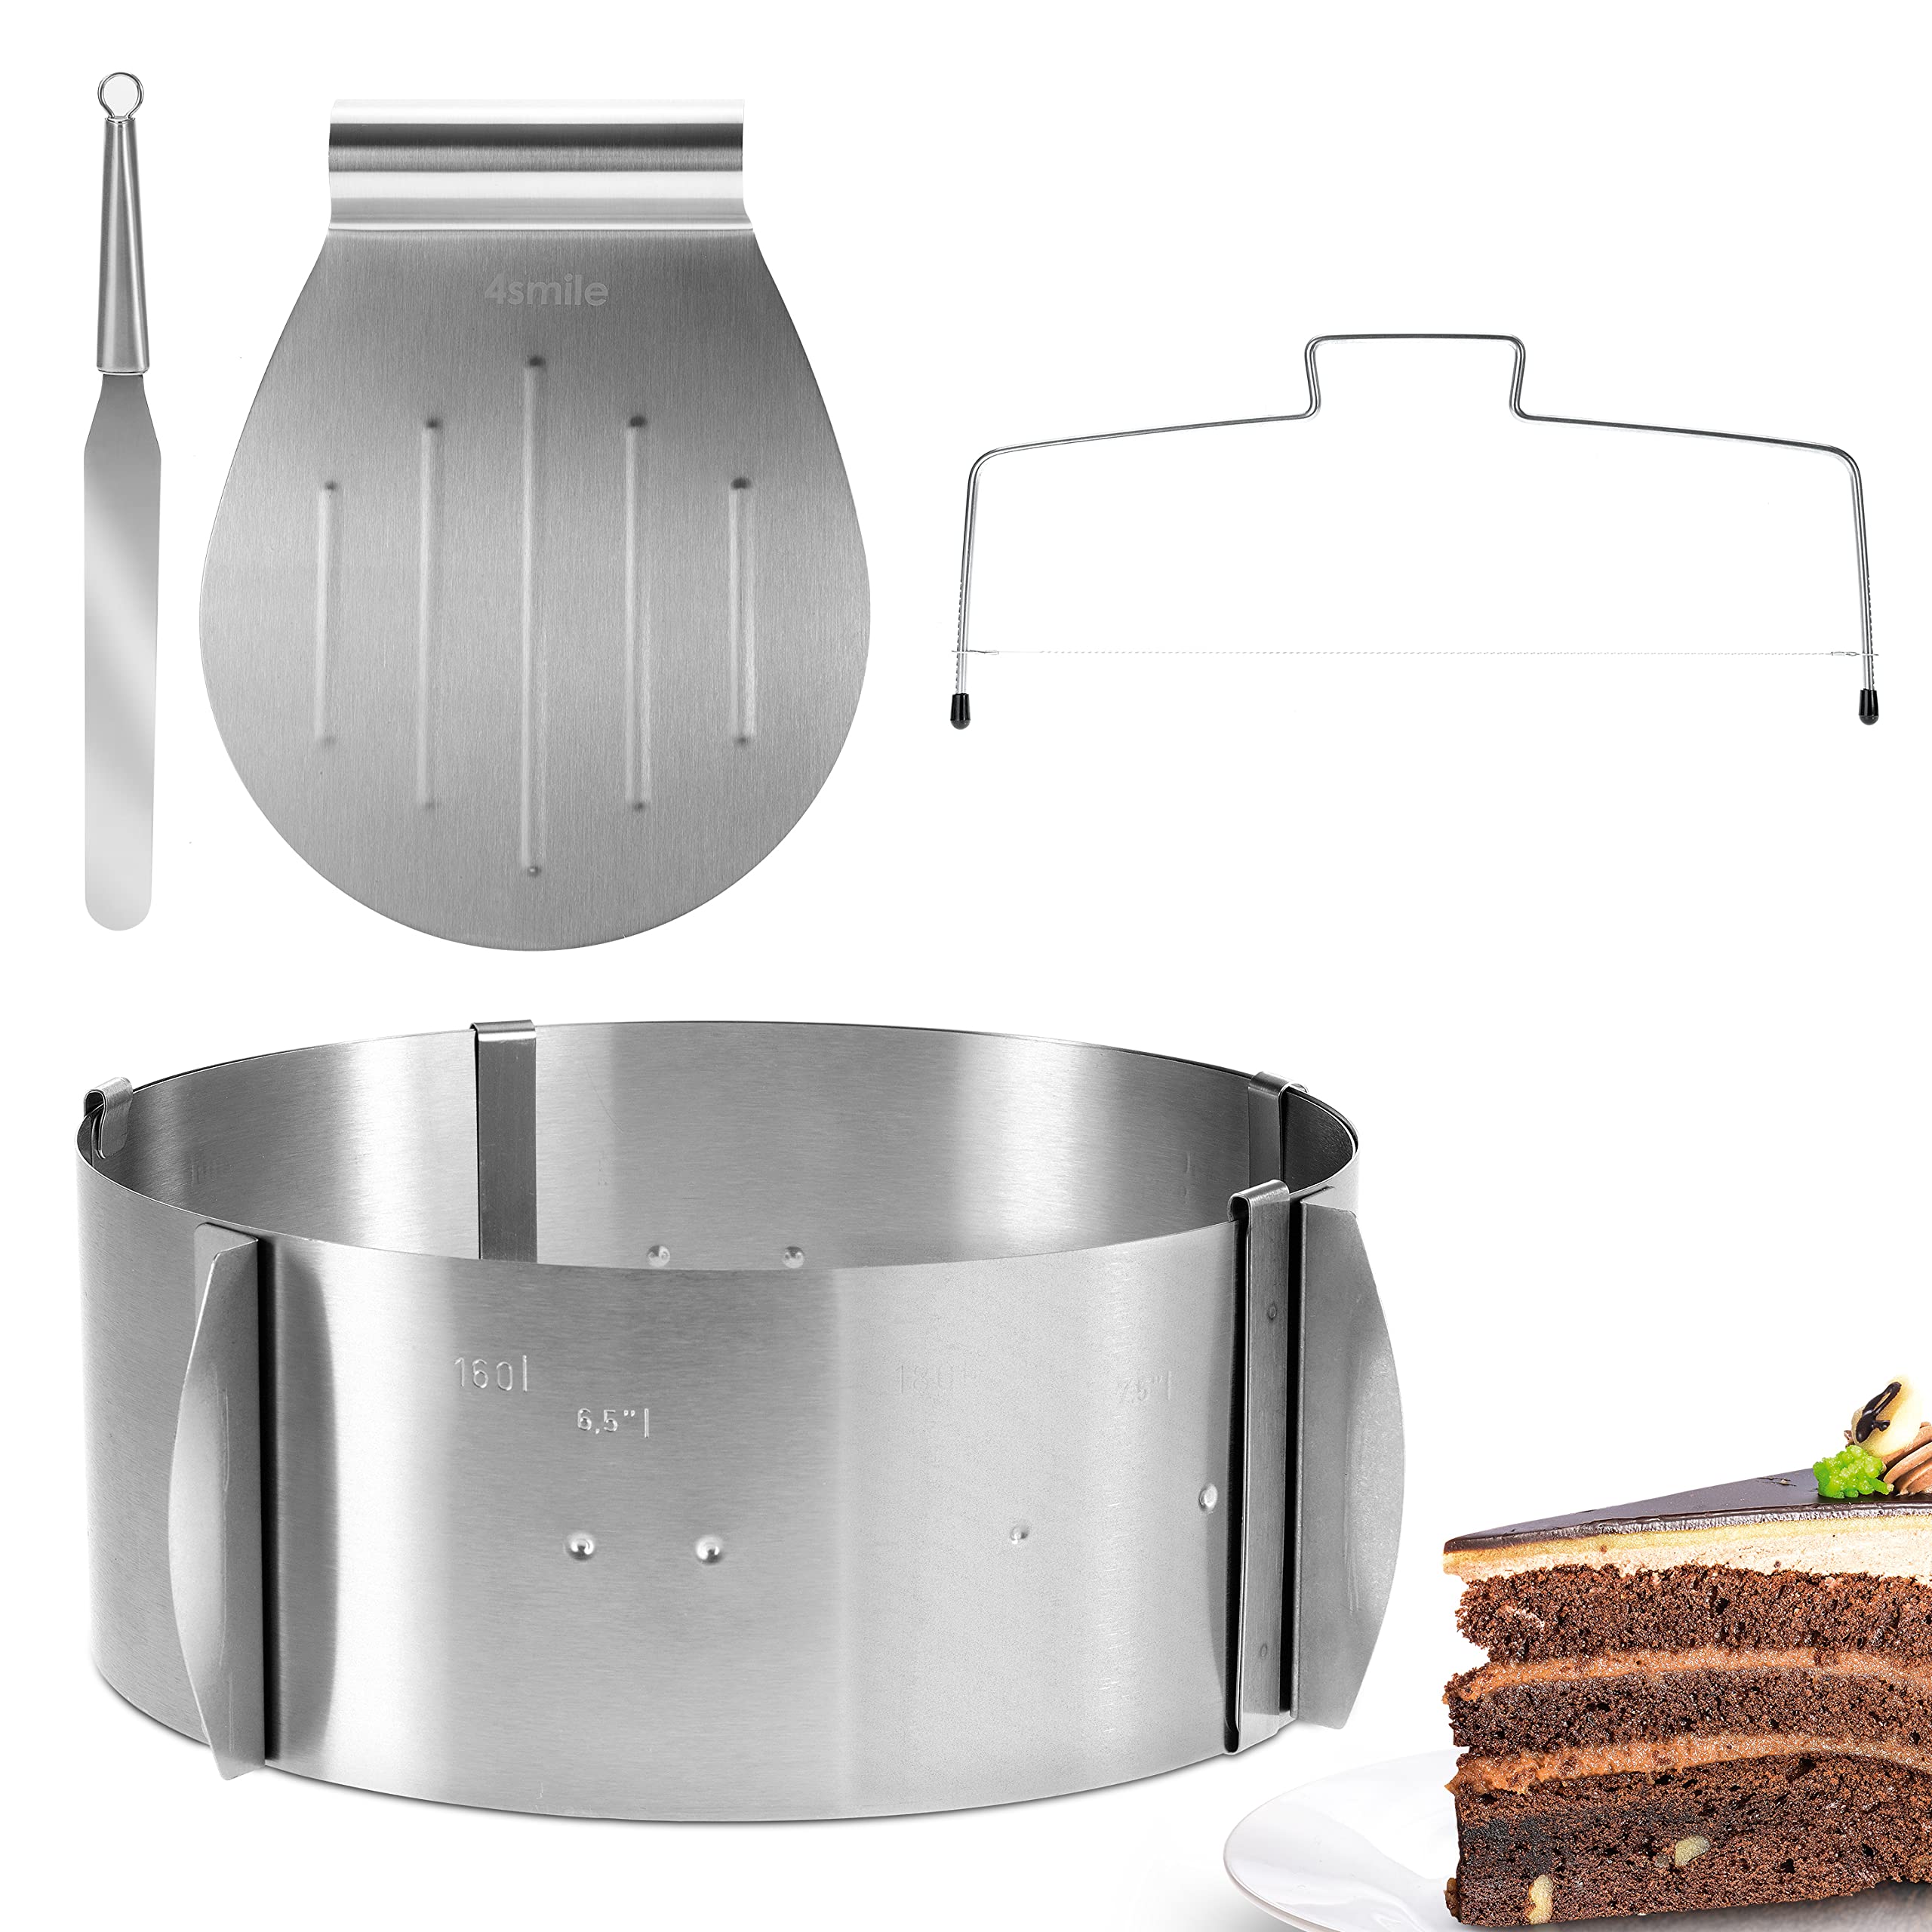 4smile Torten-Zubehör-Set – 4 Teile, Edelstahl - Tortenring verstellbar hoch 8,5cm + Tortenschneider + Tortenheber + Streichmesser - Komplett-Set für die Torten-Zubereitung